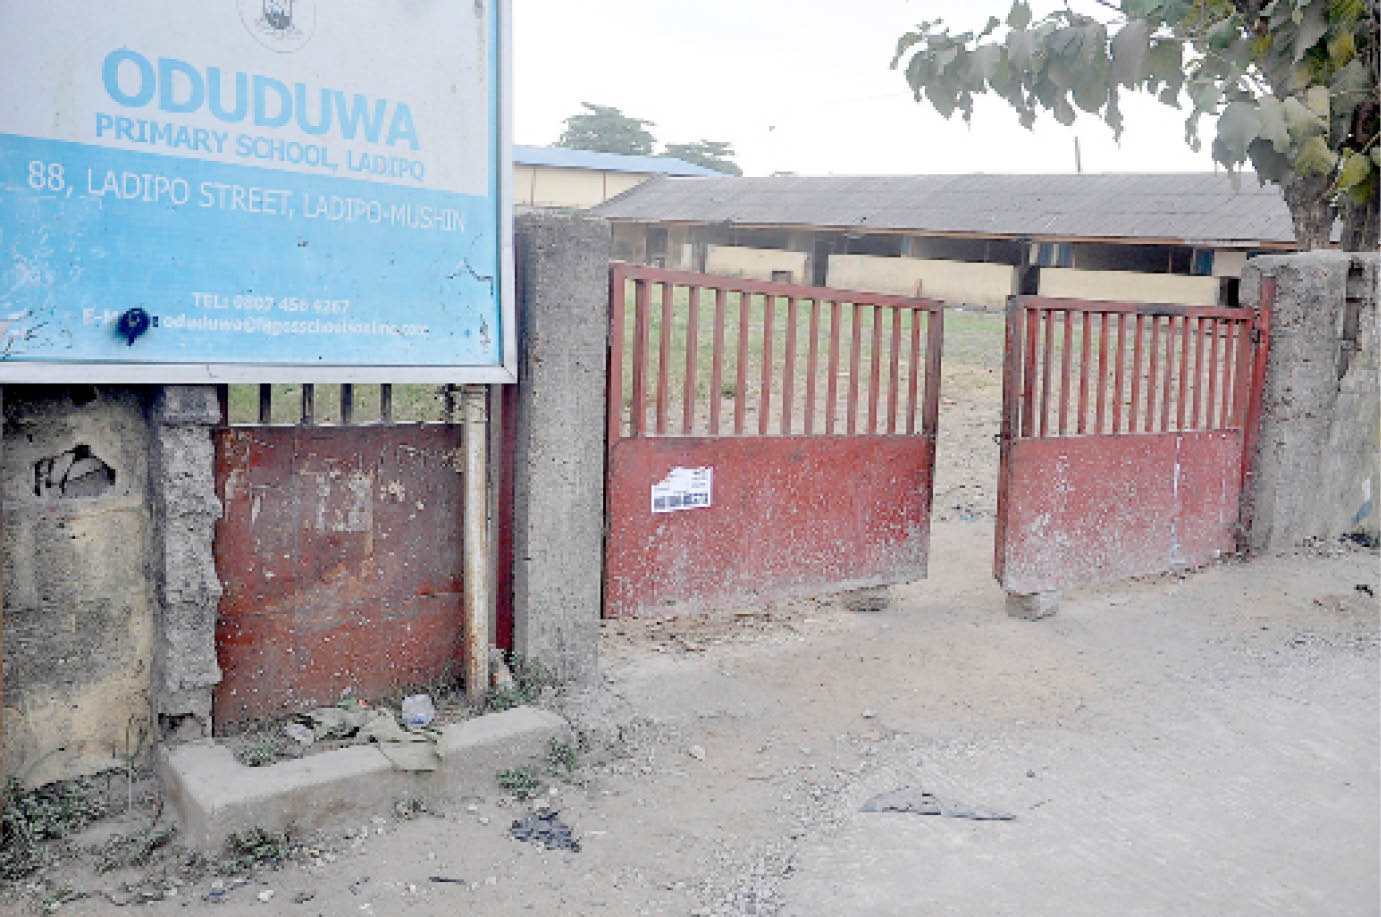 Oduduwa Primary School, along Ladipo street, Mushin in Lagos